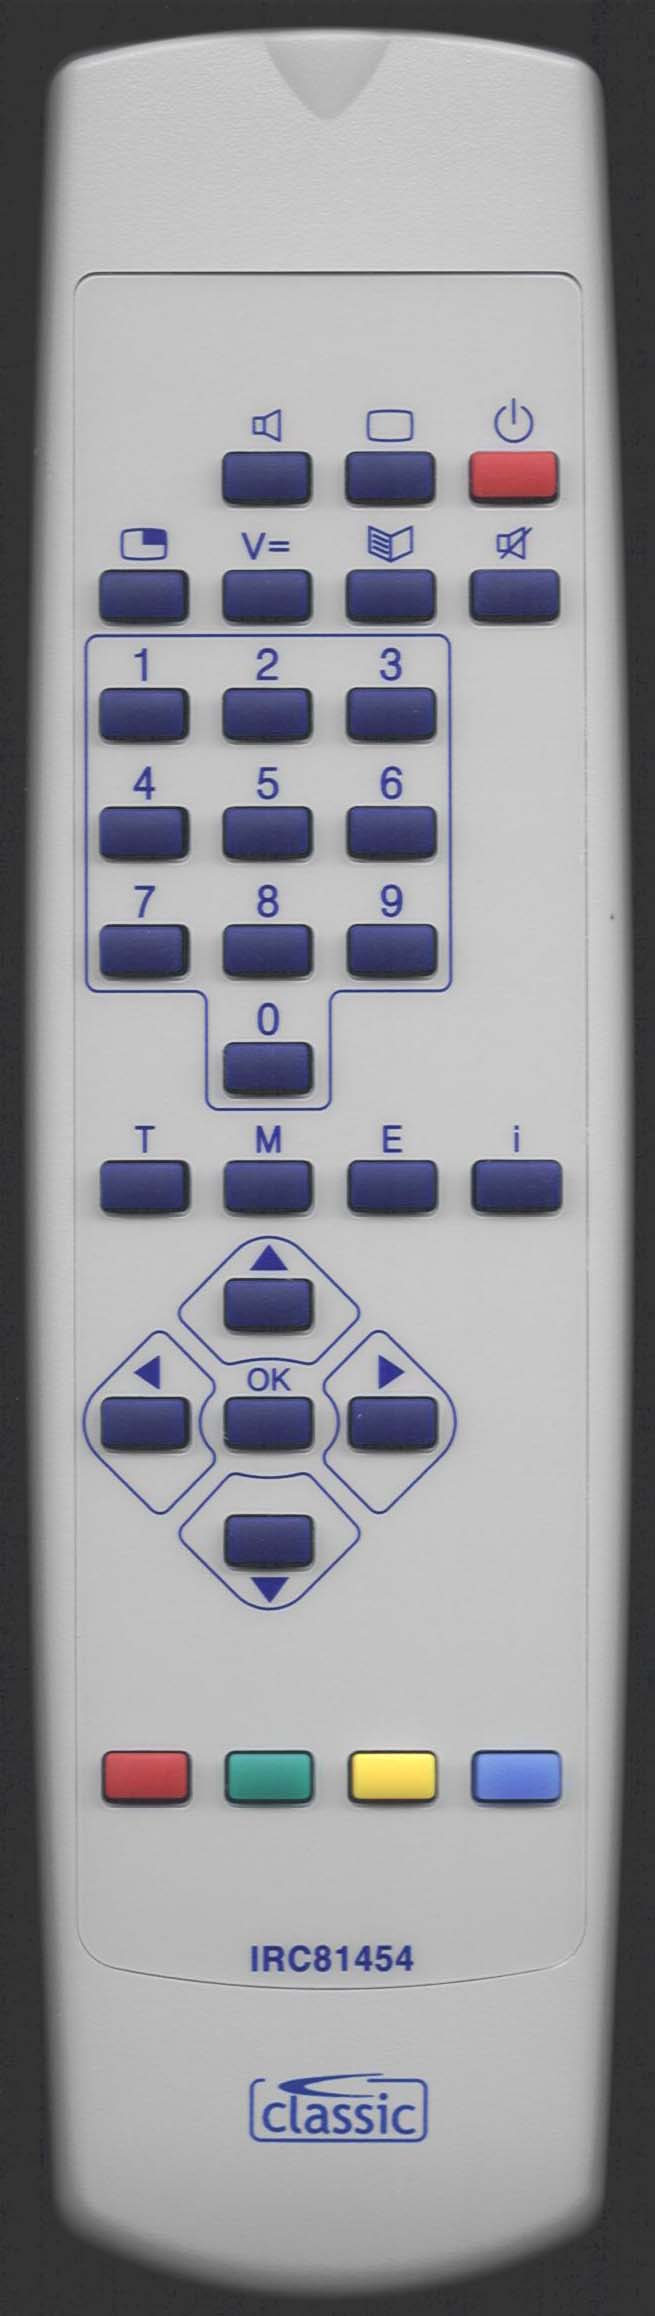 Loewe 87000 055 Remote Control